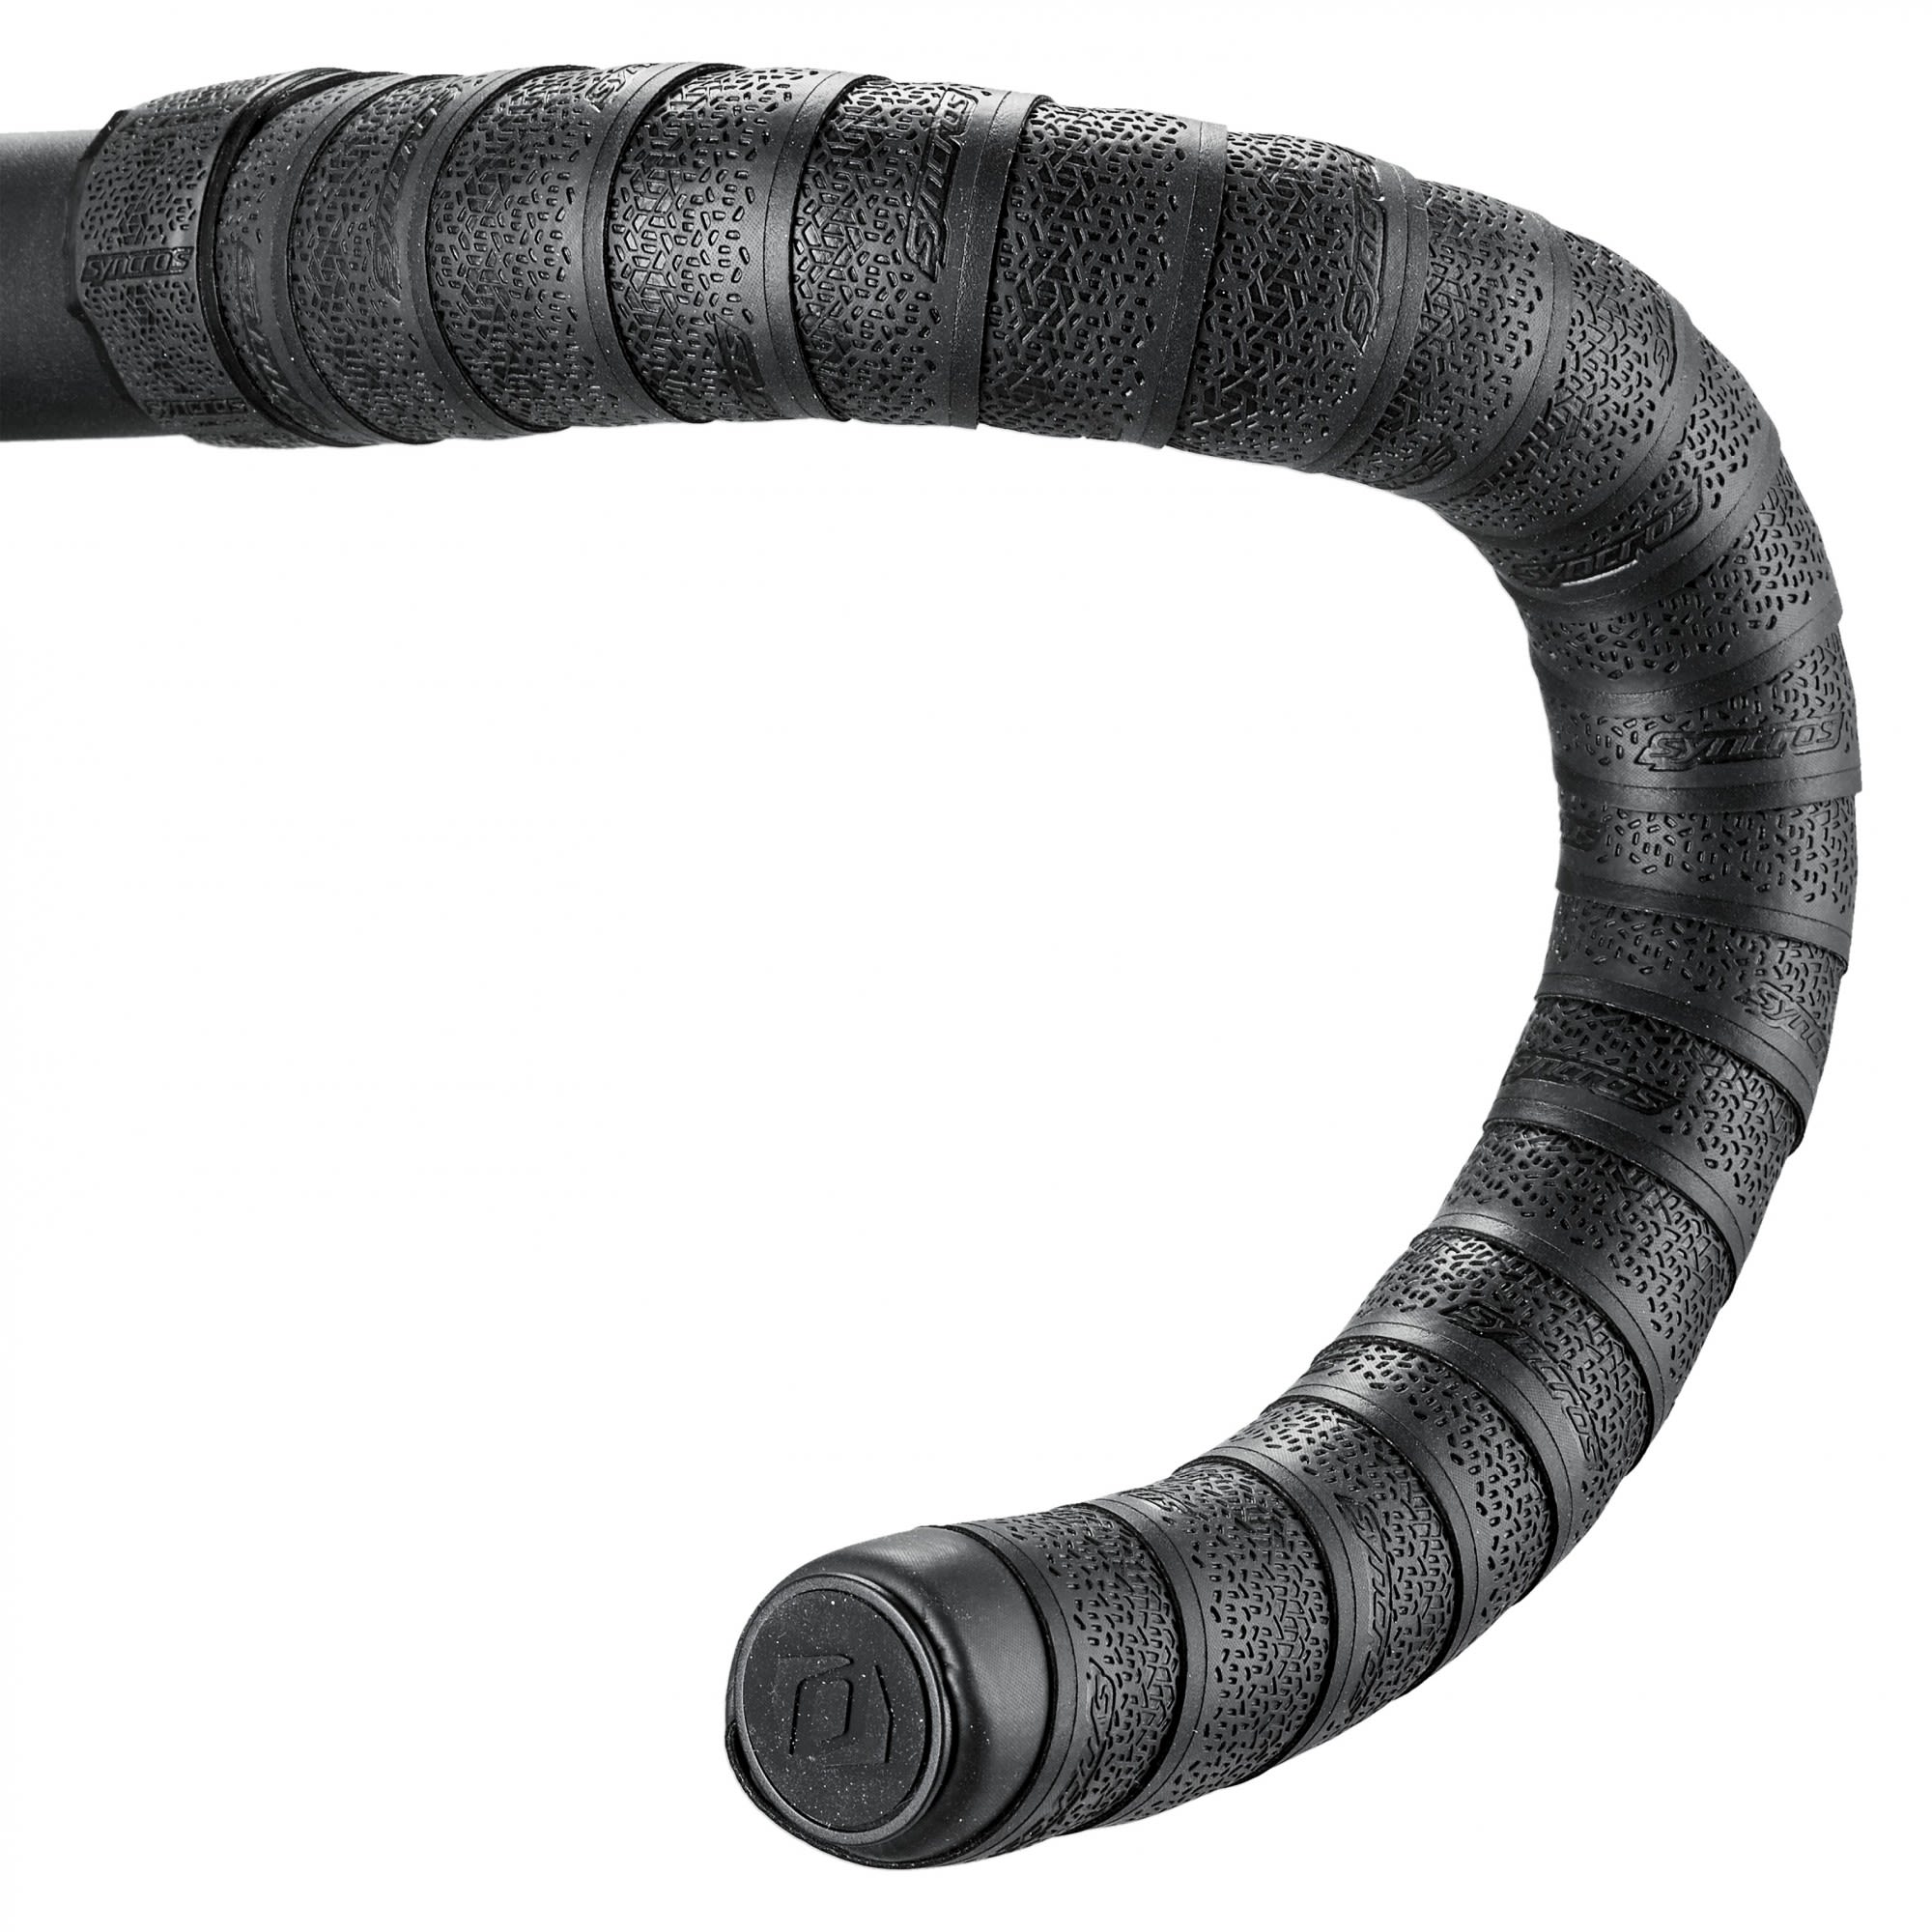 Syncros Extrem Dickes Lenkerband Schwarz- Zubehr- Reparatur und Wartung- Grsse One Size - Farbe Black